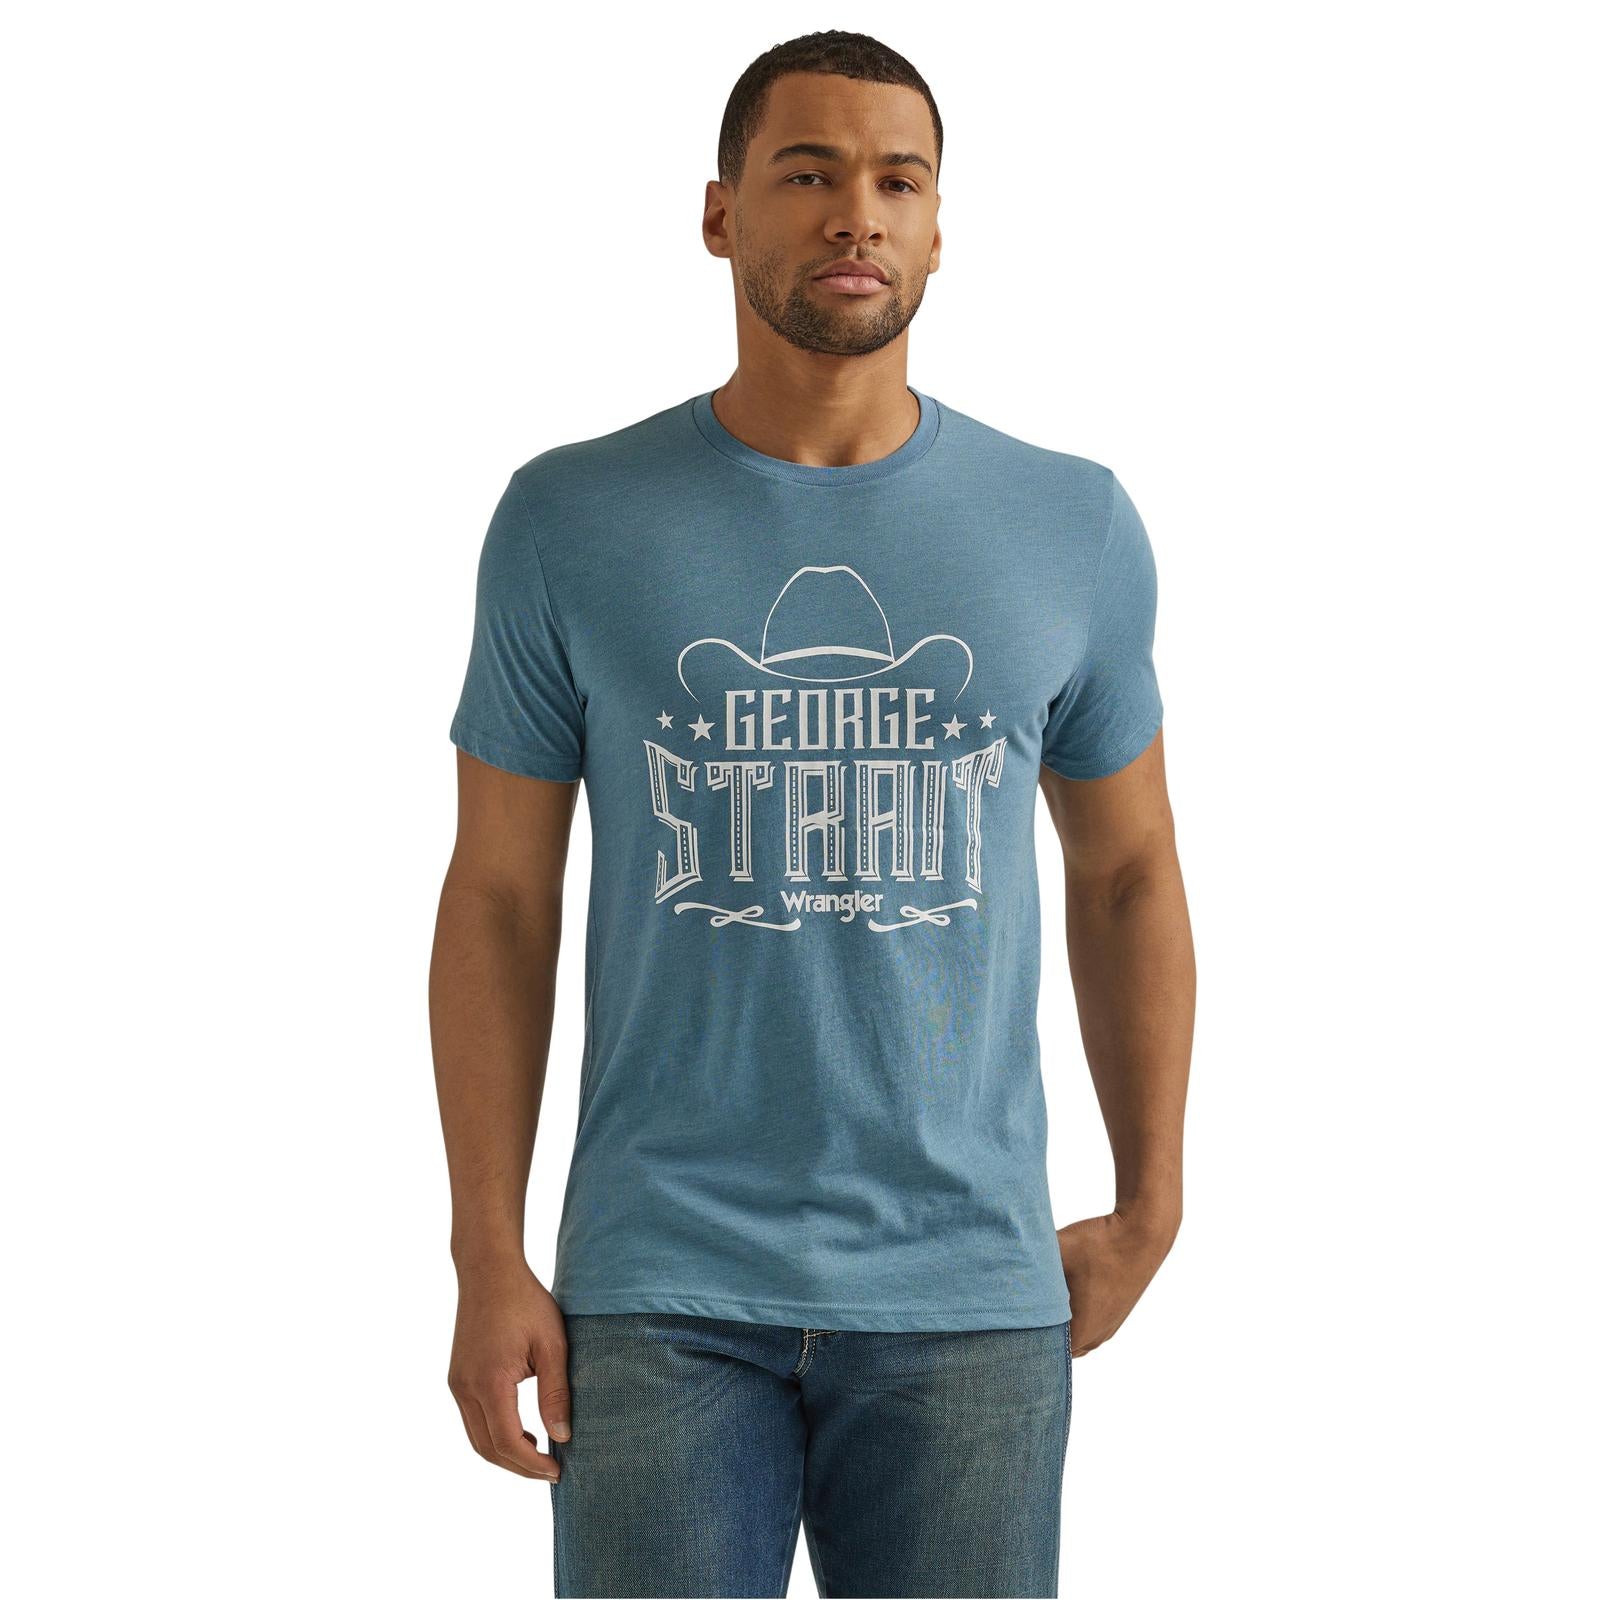 Wrangler George Strait Men's Short Sleeve T-Shirt  STYLE 112344151